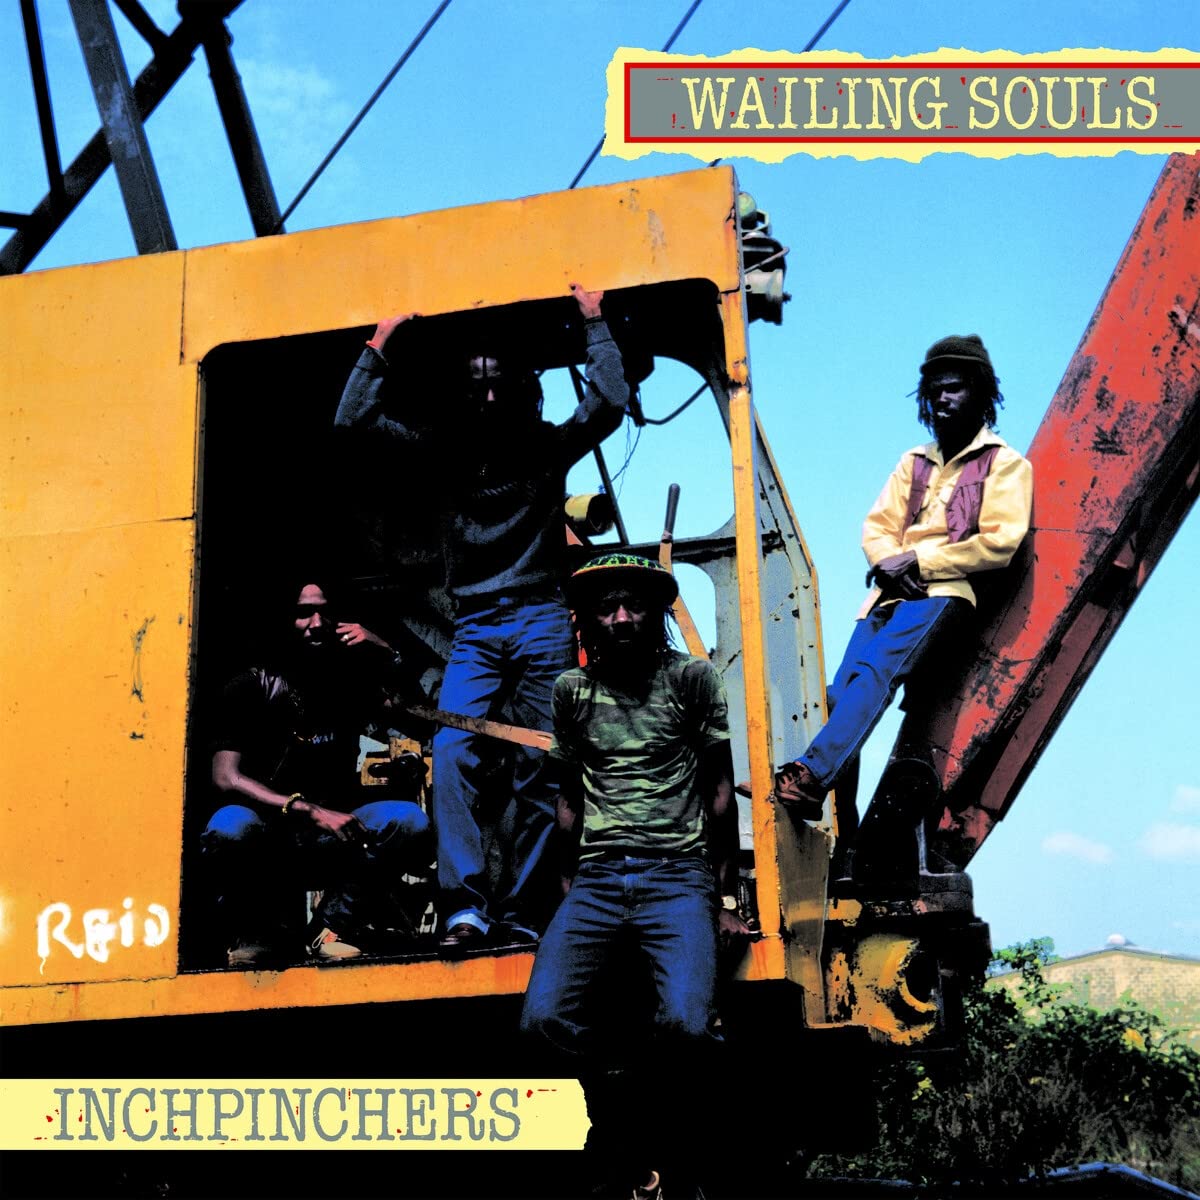 WAILING SOULS - INCHPINCHERS Vinyl LP